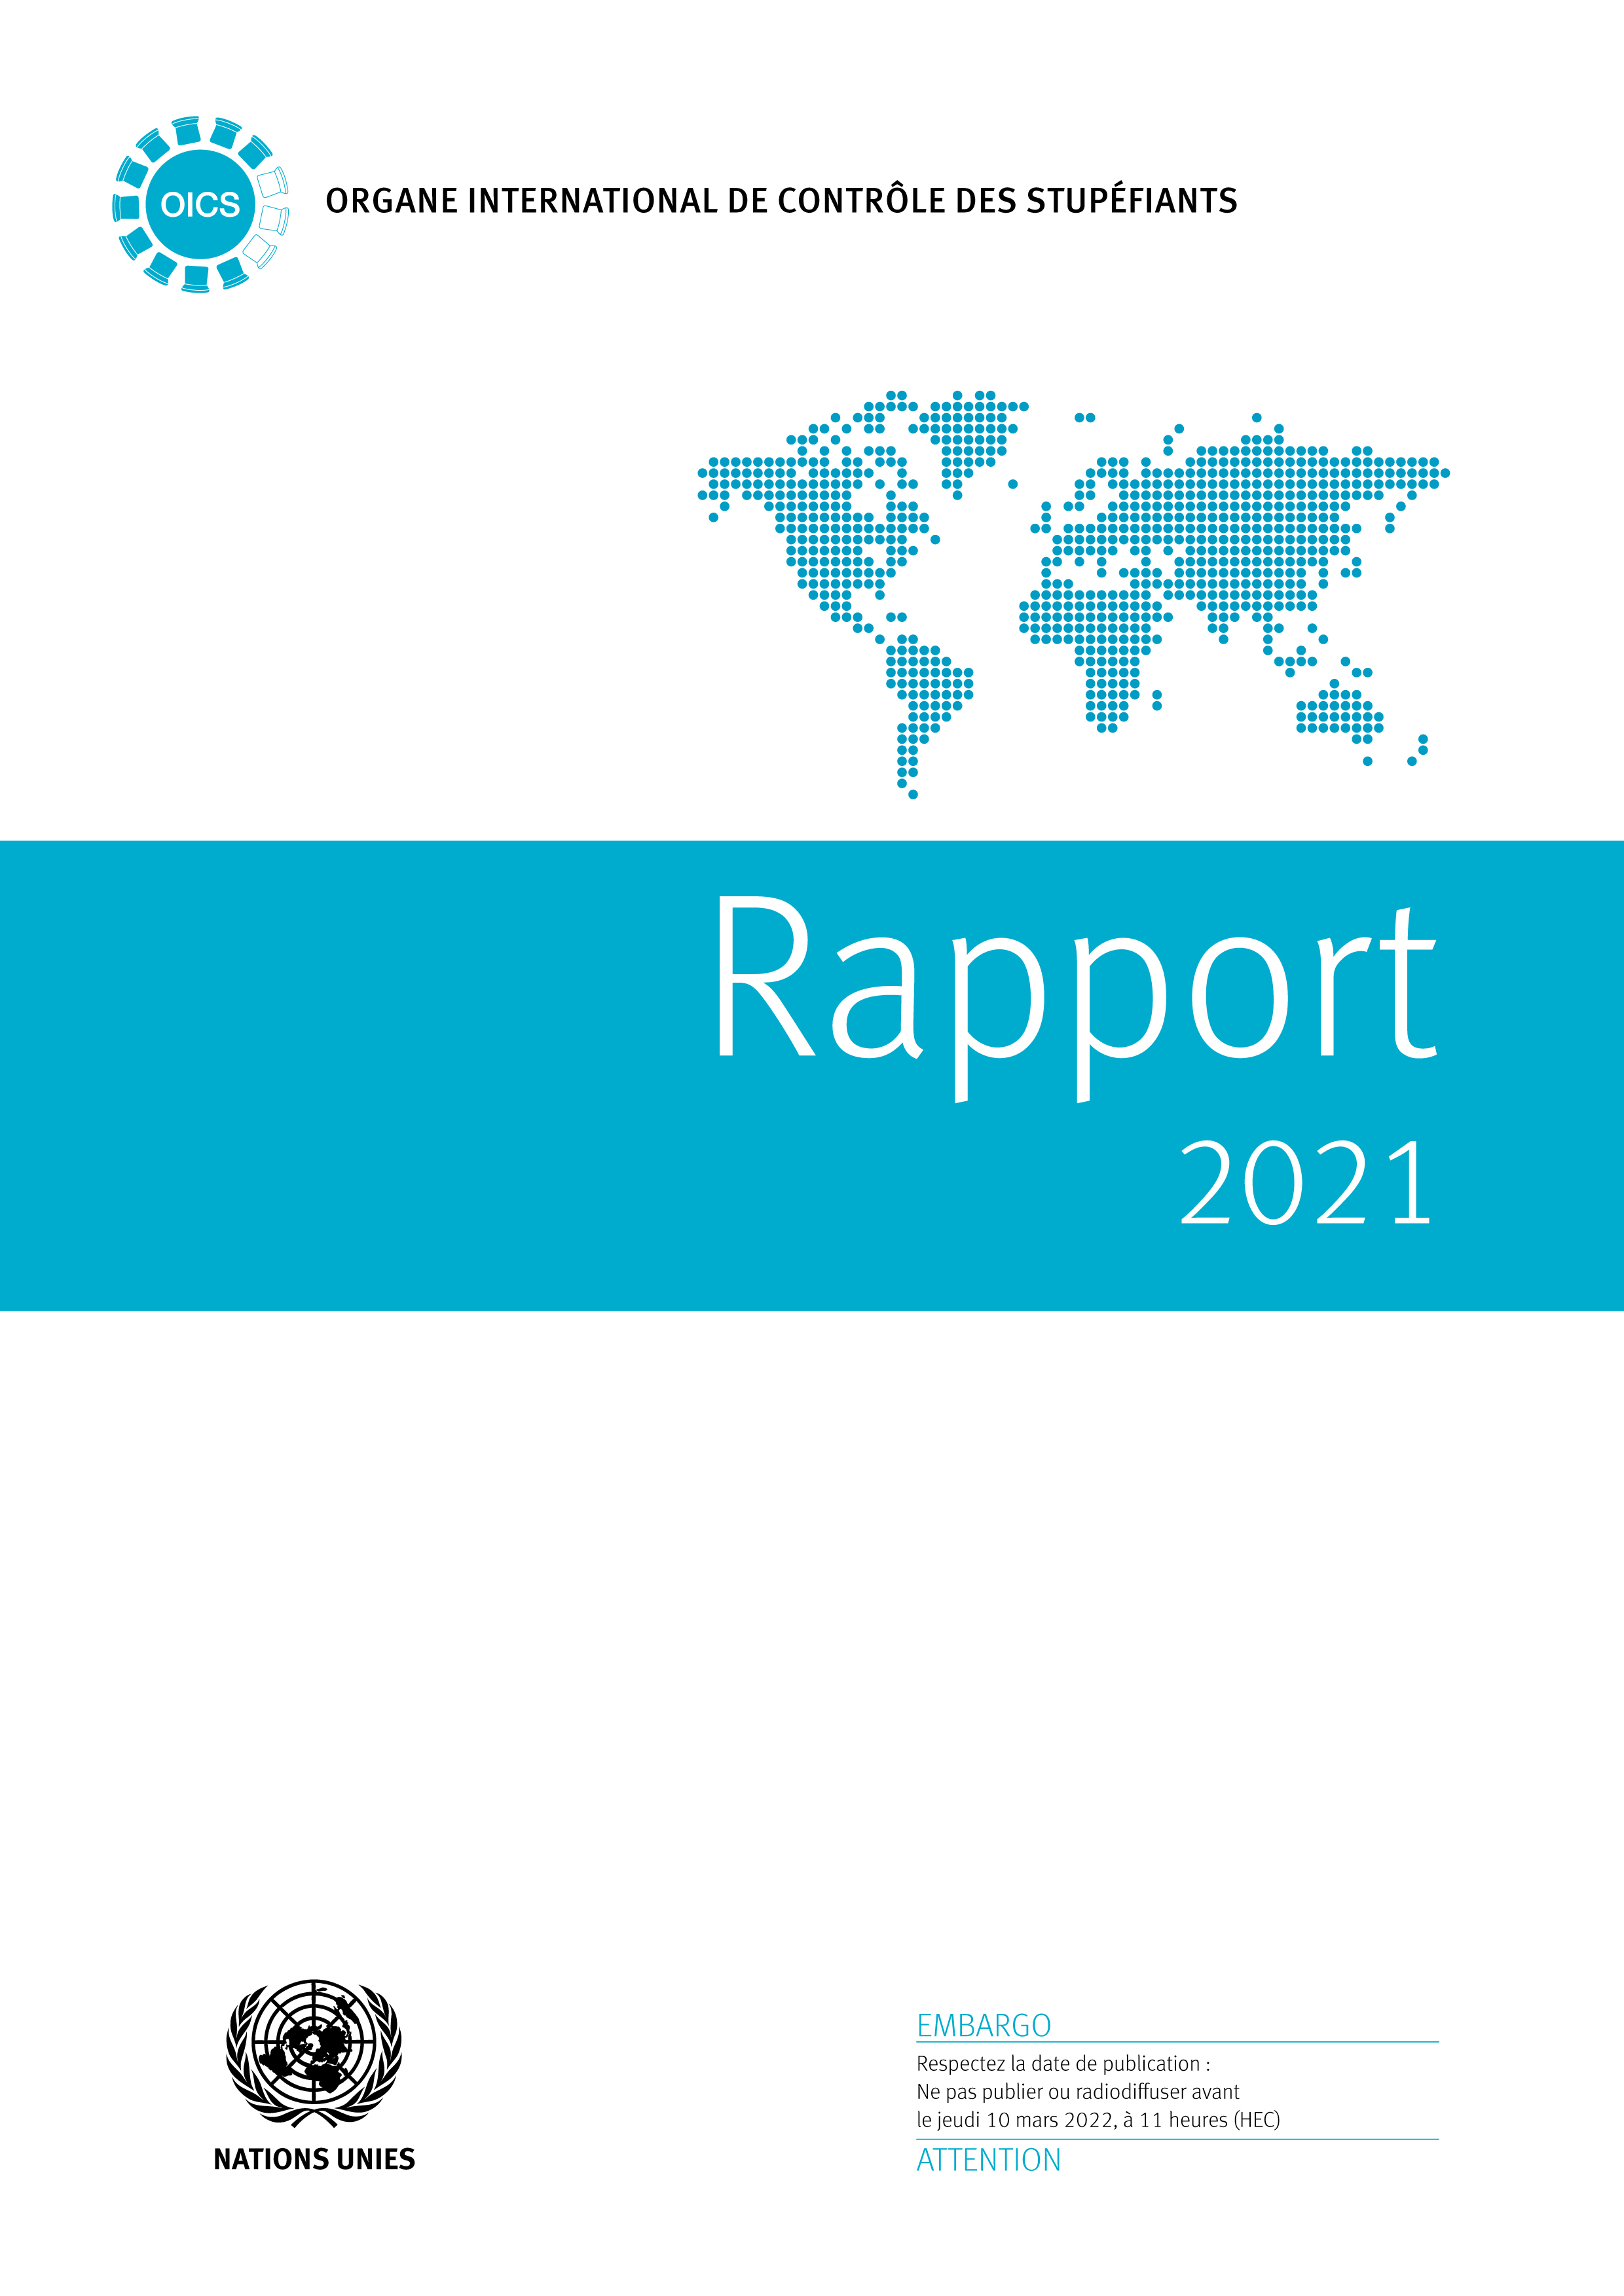 image of Rapport de l’Organe international de contrôle des stupéfiants pour 2021